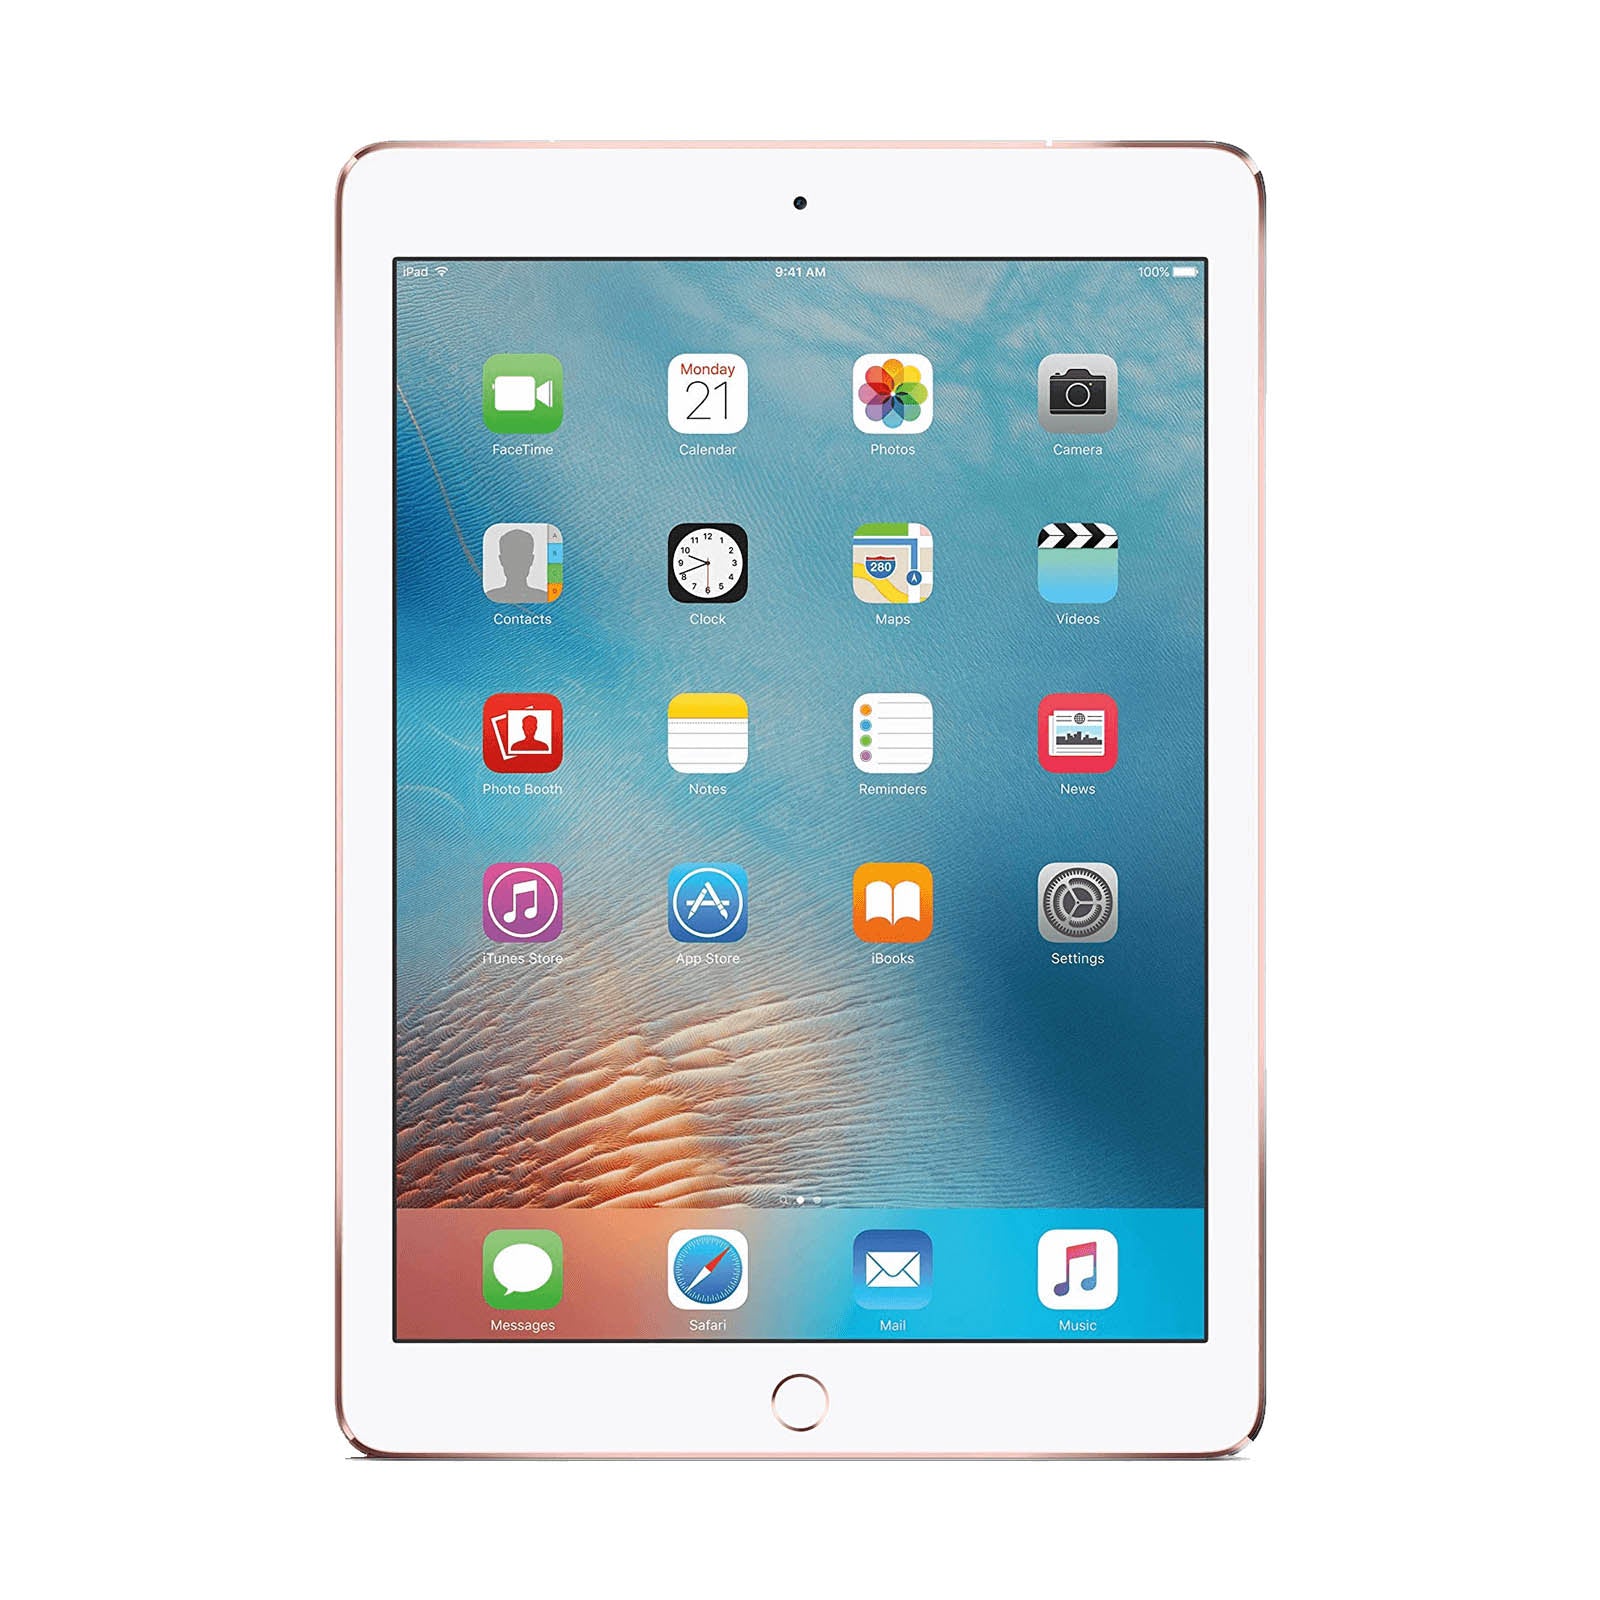 Apple iPad Pro 9.7" 32GB Gold Very Good - WiFi